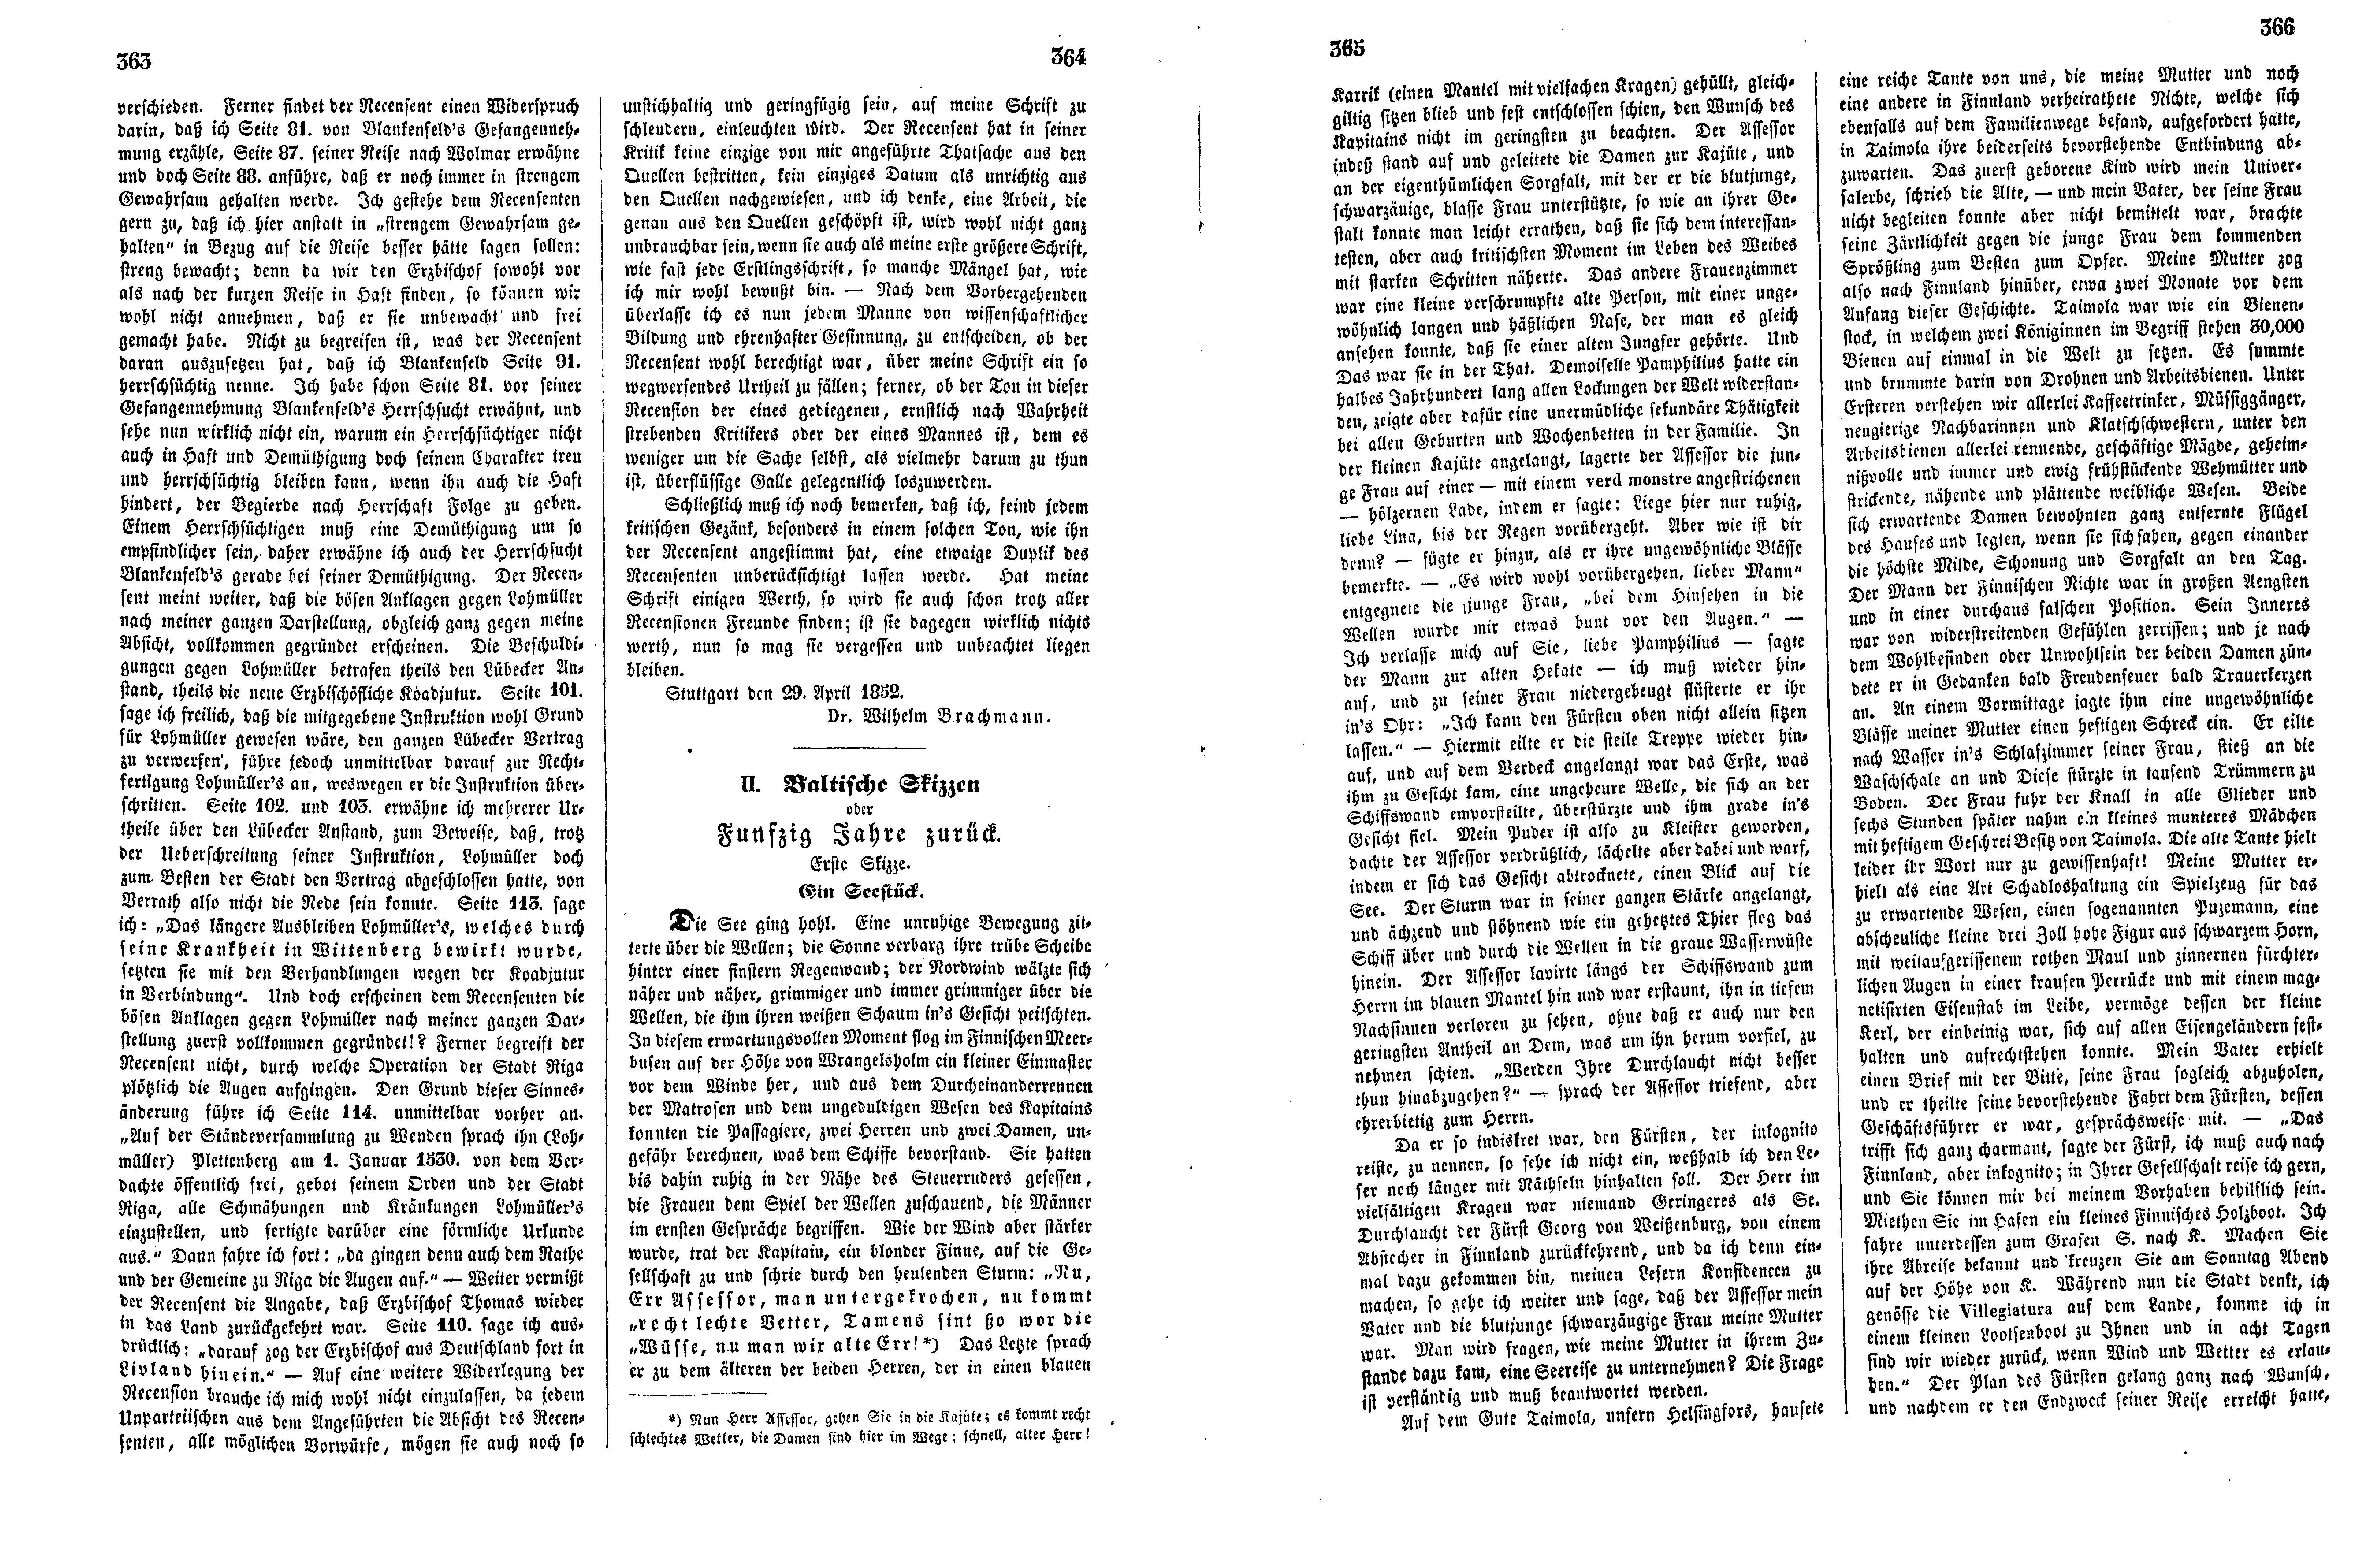 Baltische Skizzen oder Funfzig Jahre zurück [01] (Ein Seestück) (1852) | 1. (363-366) Haupttext